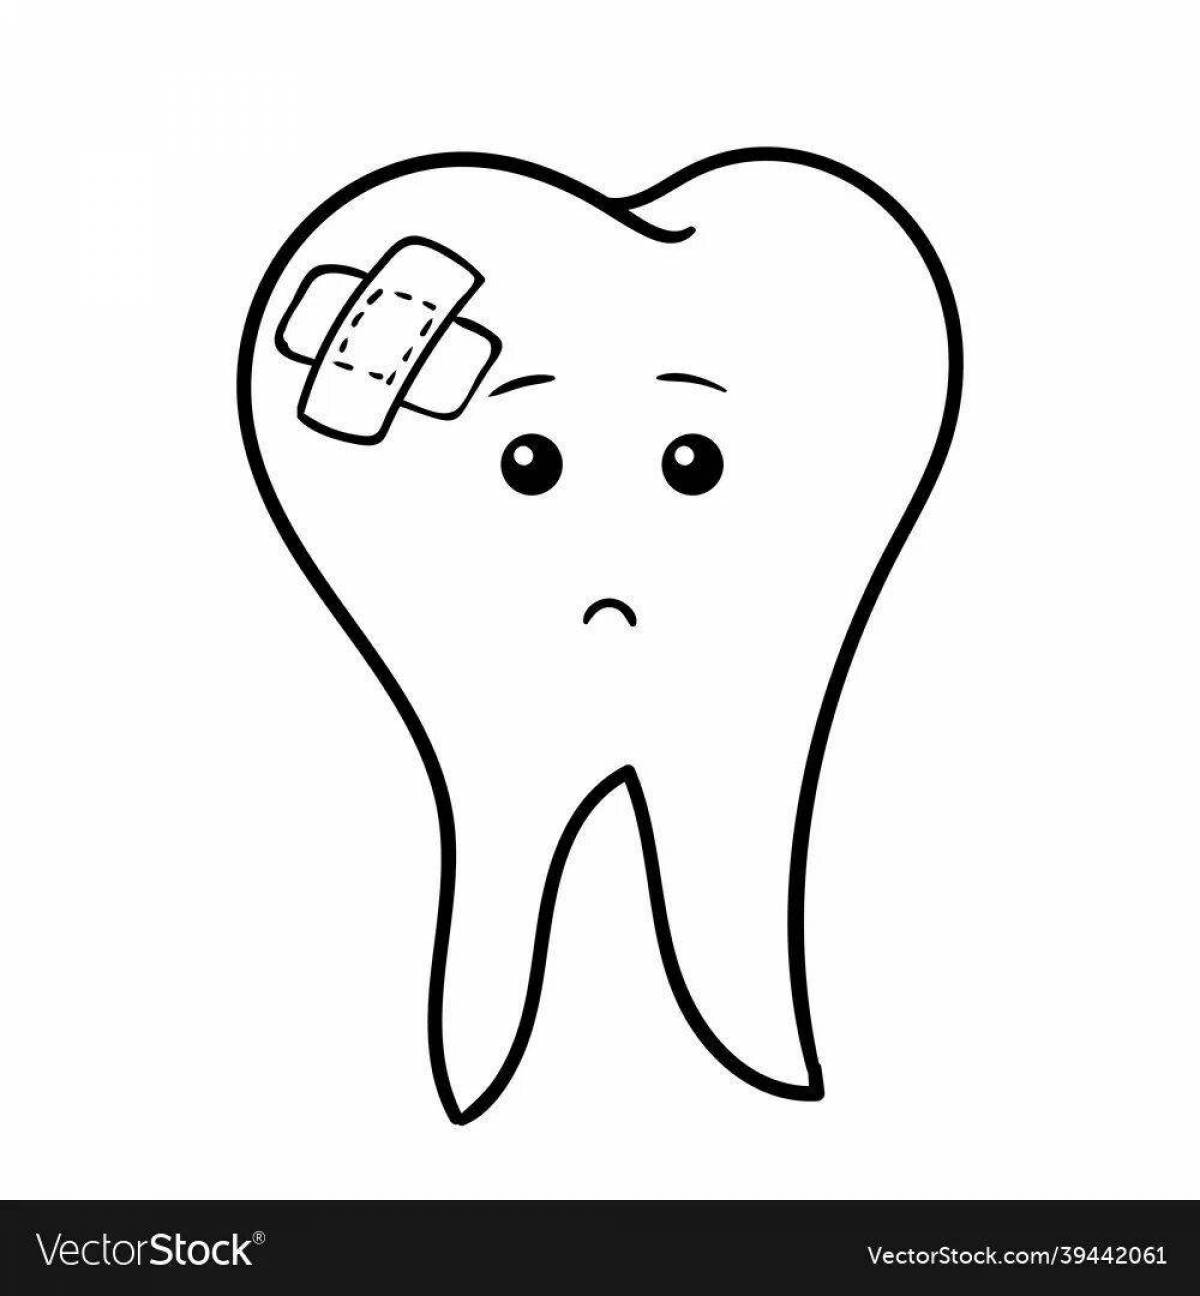 Sad tooth #2